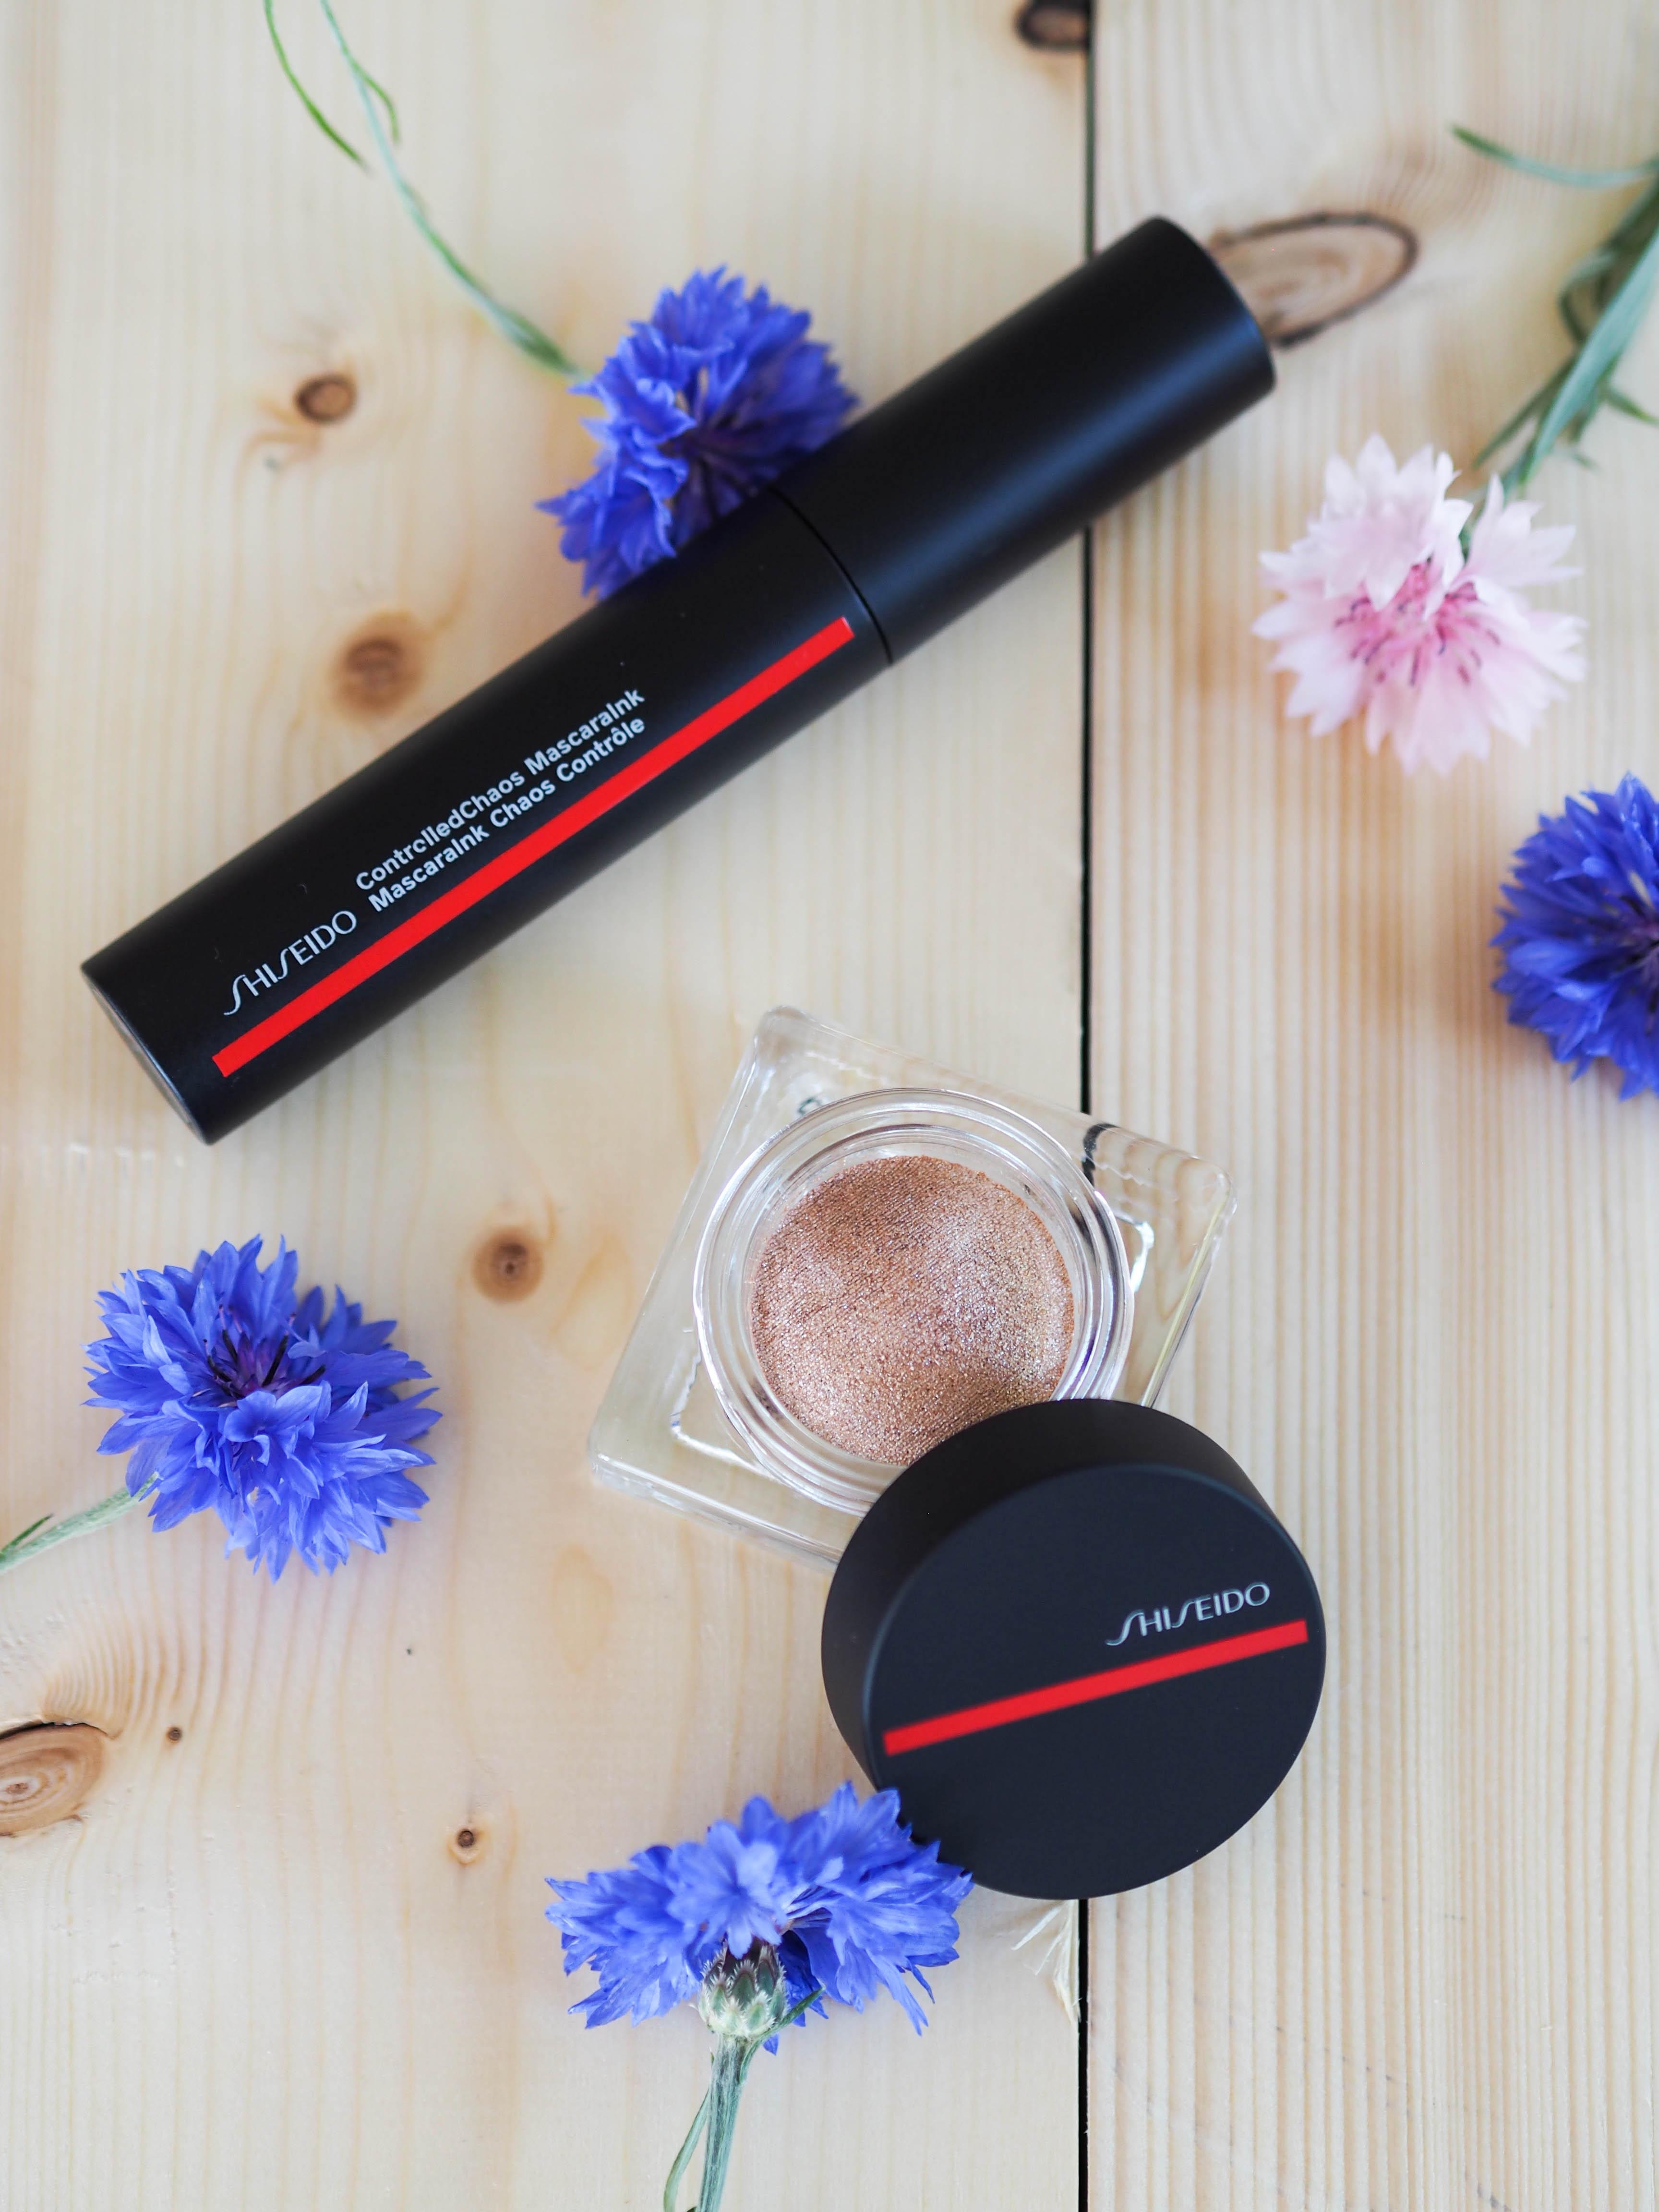 Für Äuglein, die mit der Sonne um die Wette strahlen: Multi-use
Highlighter & MascaraInk von #shiseido #beautylieblinge 